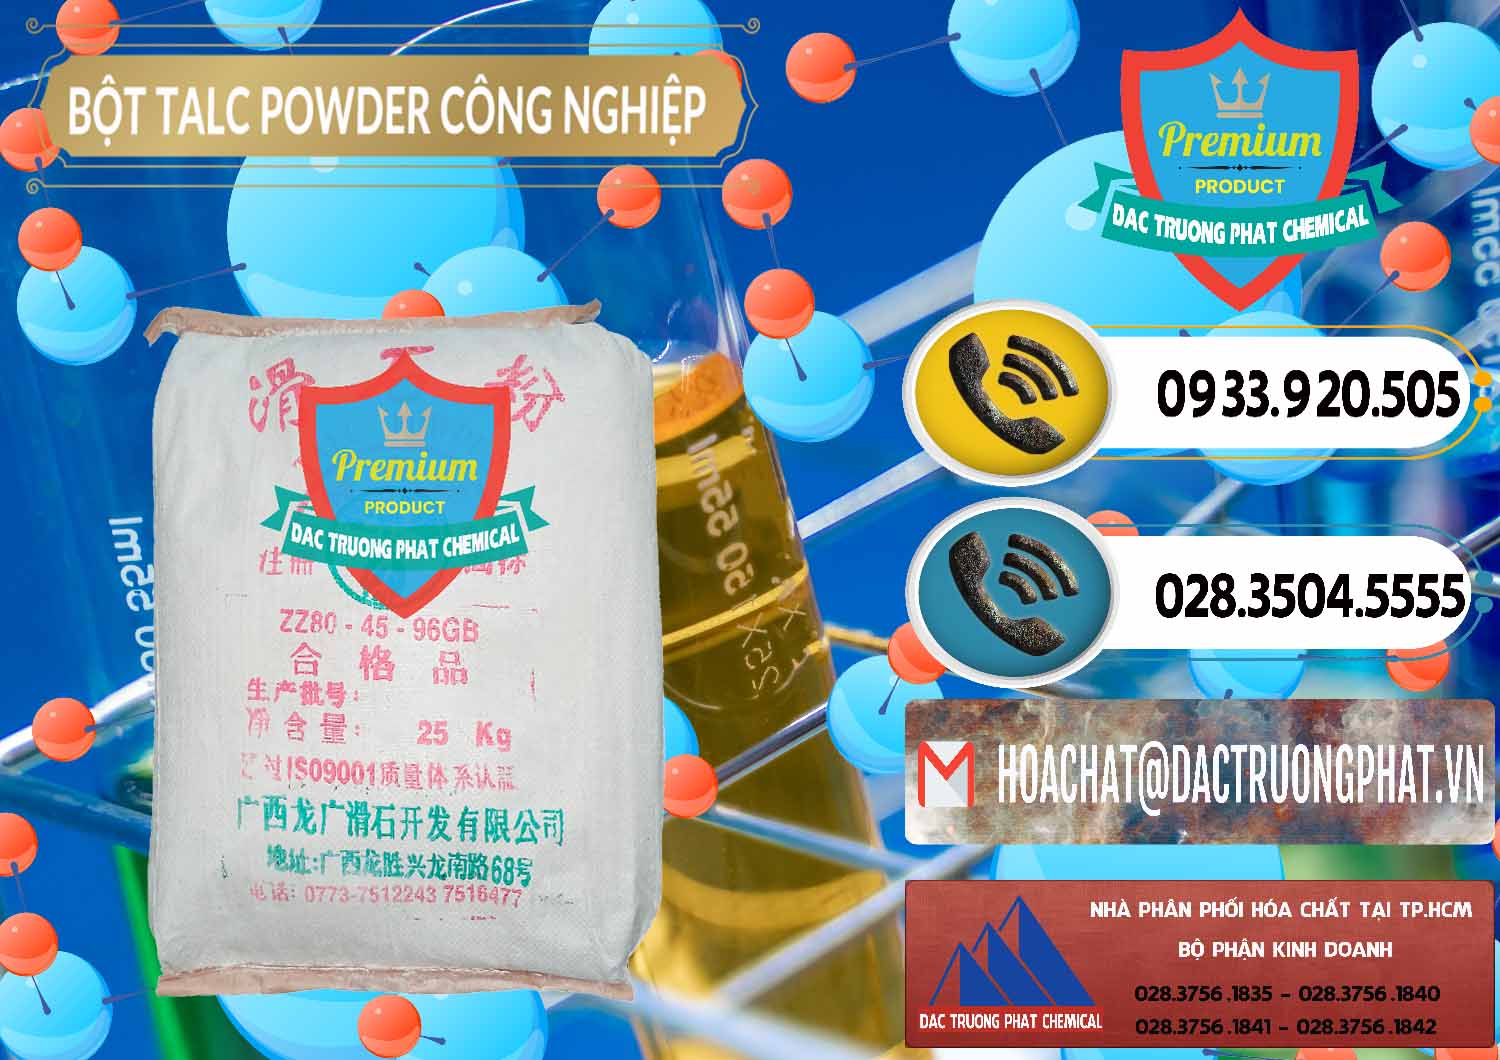 Chuyên bán _ cung cấp Bột Talc Powder Công Nghiệp Trung Quốc China - 0037 - Công ty chuyên cung cấp và bán hóa chất tại TP.HCM - hoachatdetnhuom.vn